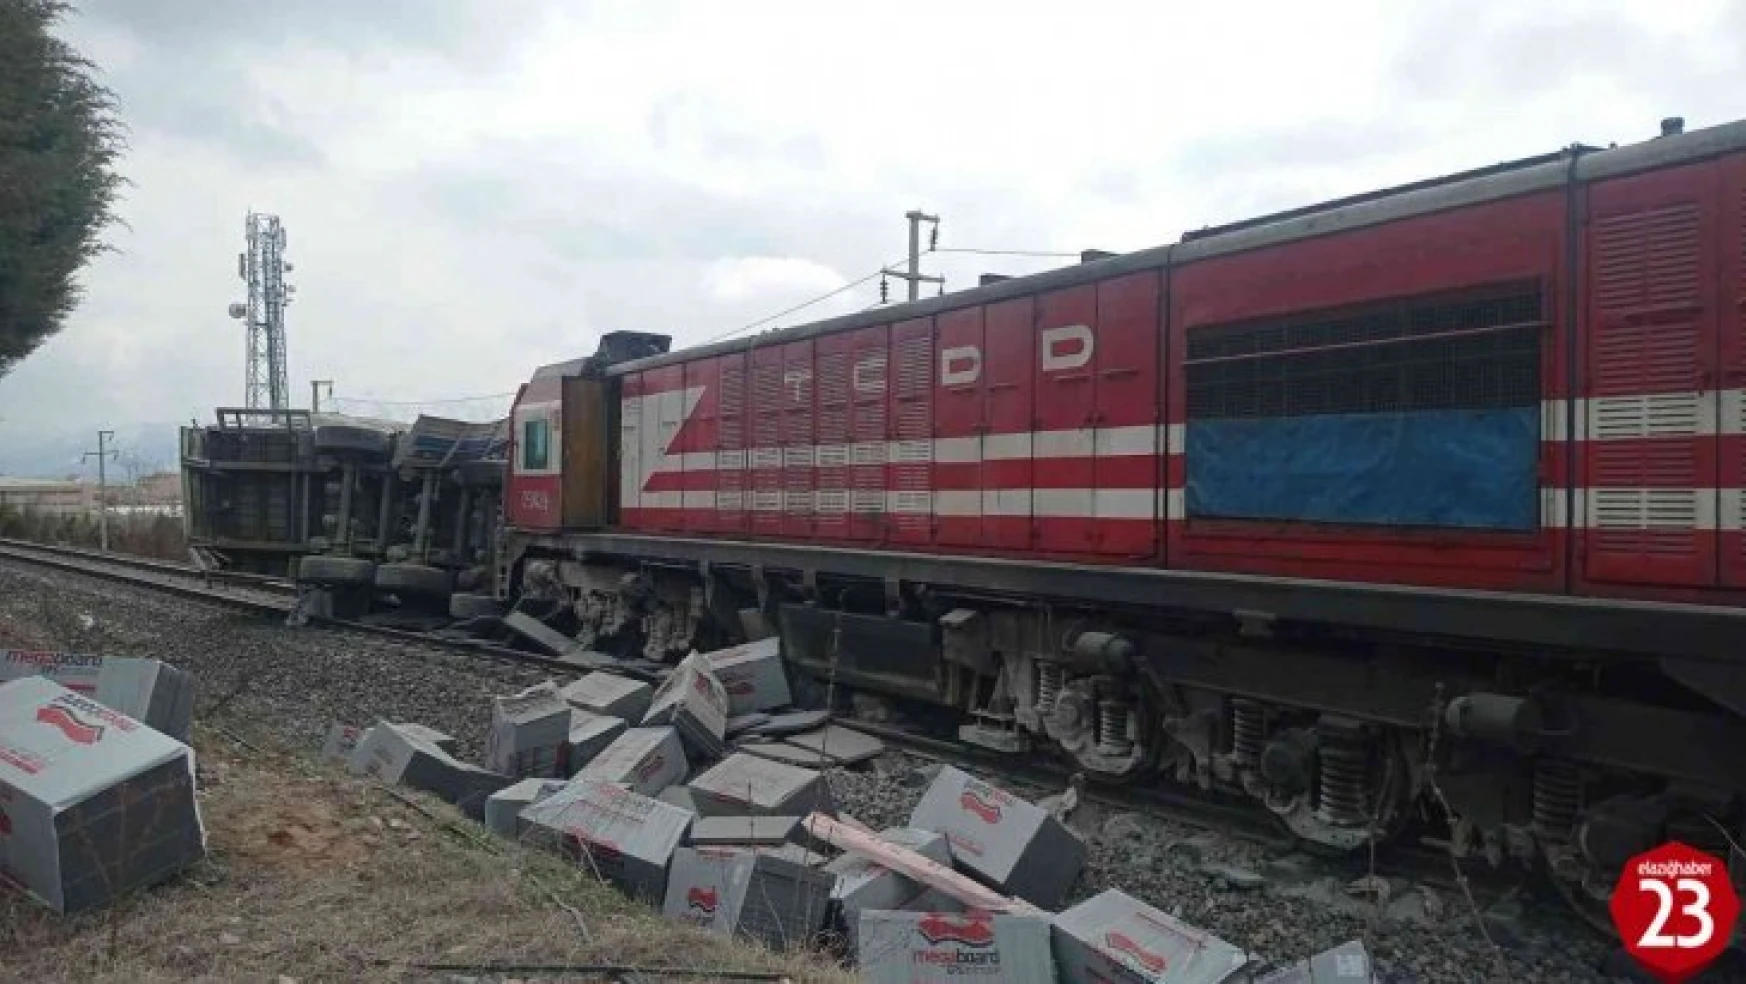 Elazığ'da Tren Tıra Çarptı, Sürücü Araçtan Atlayarak Canını Kurtardı